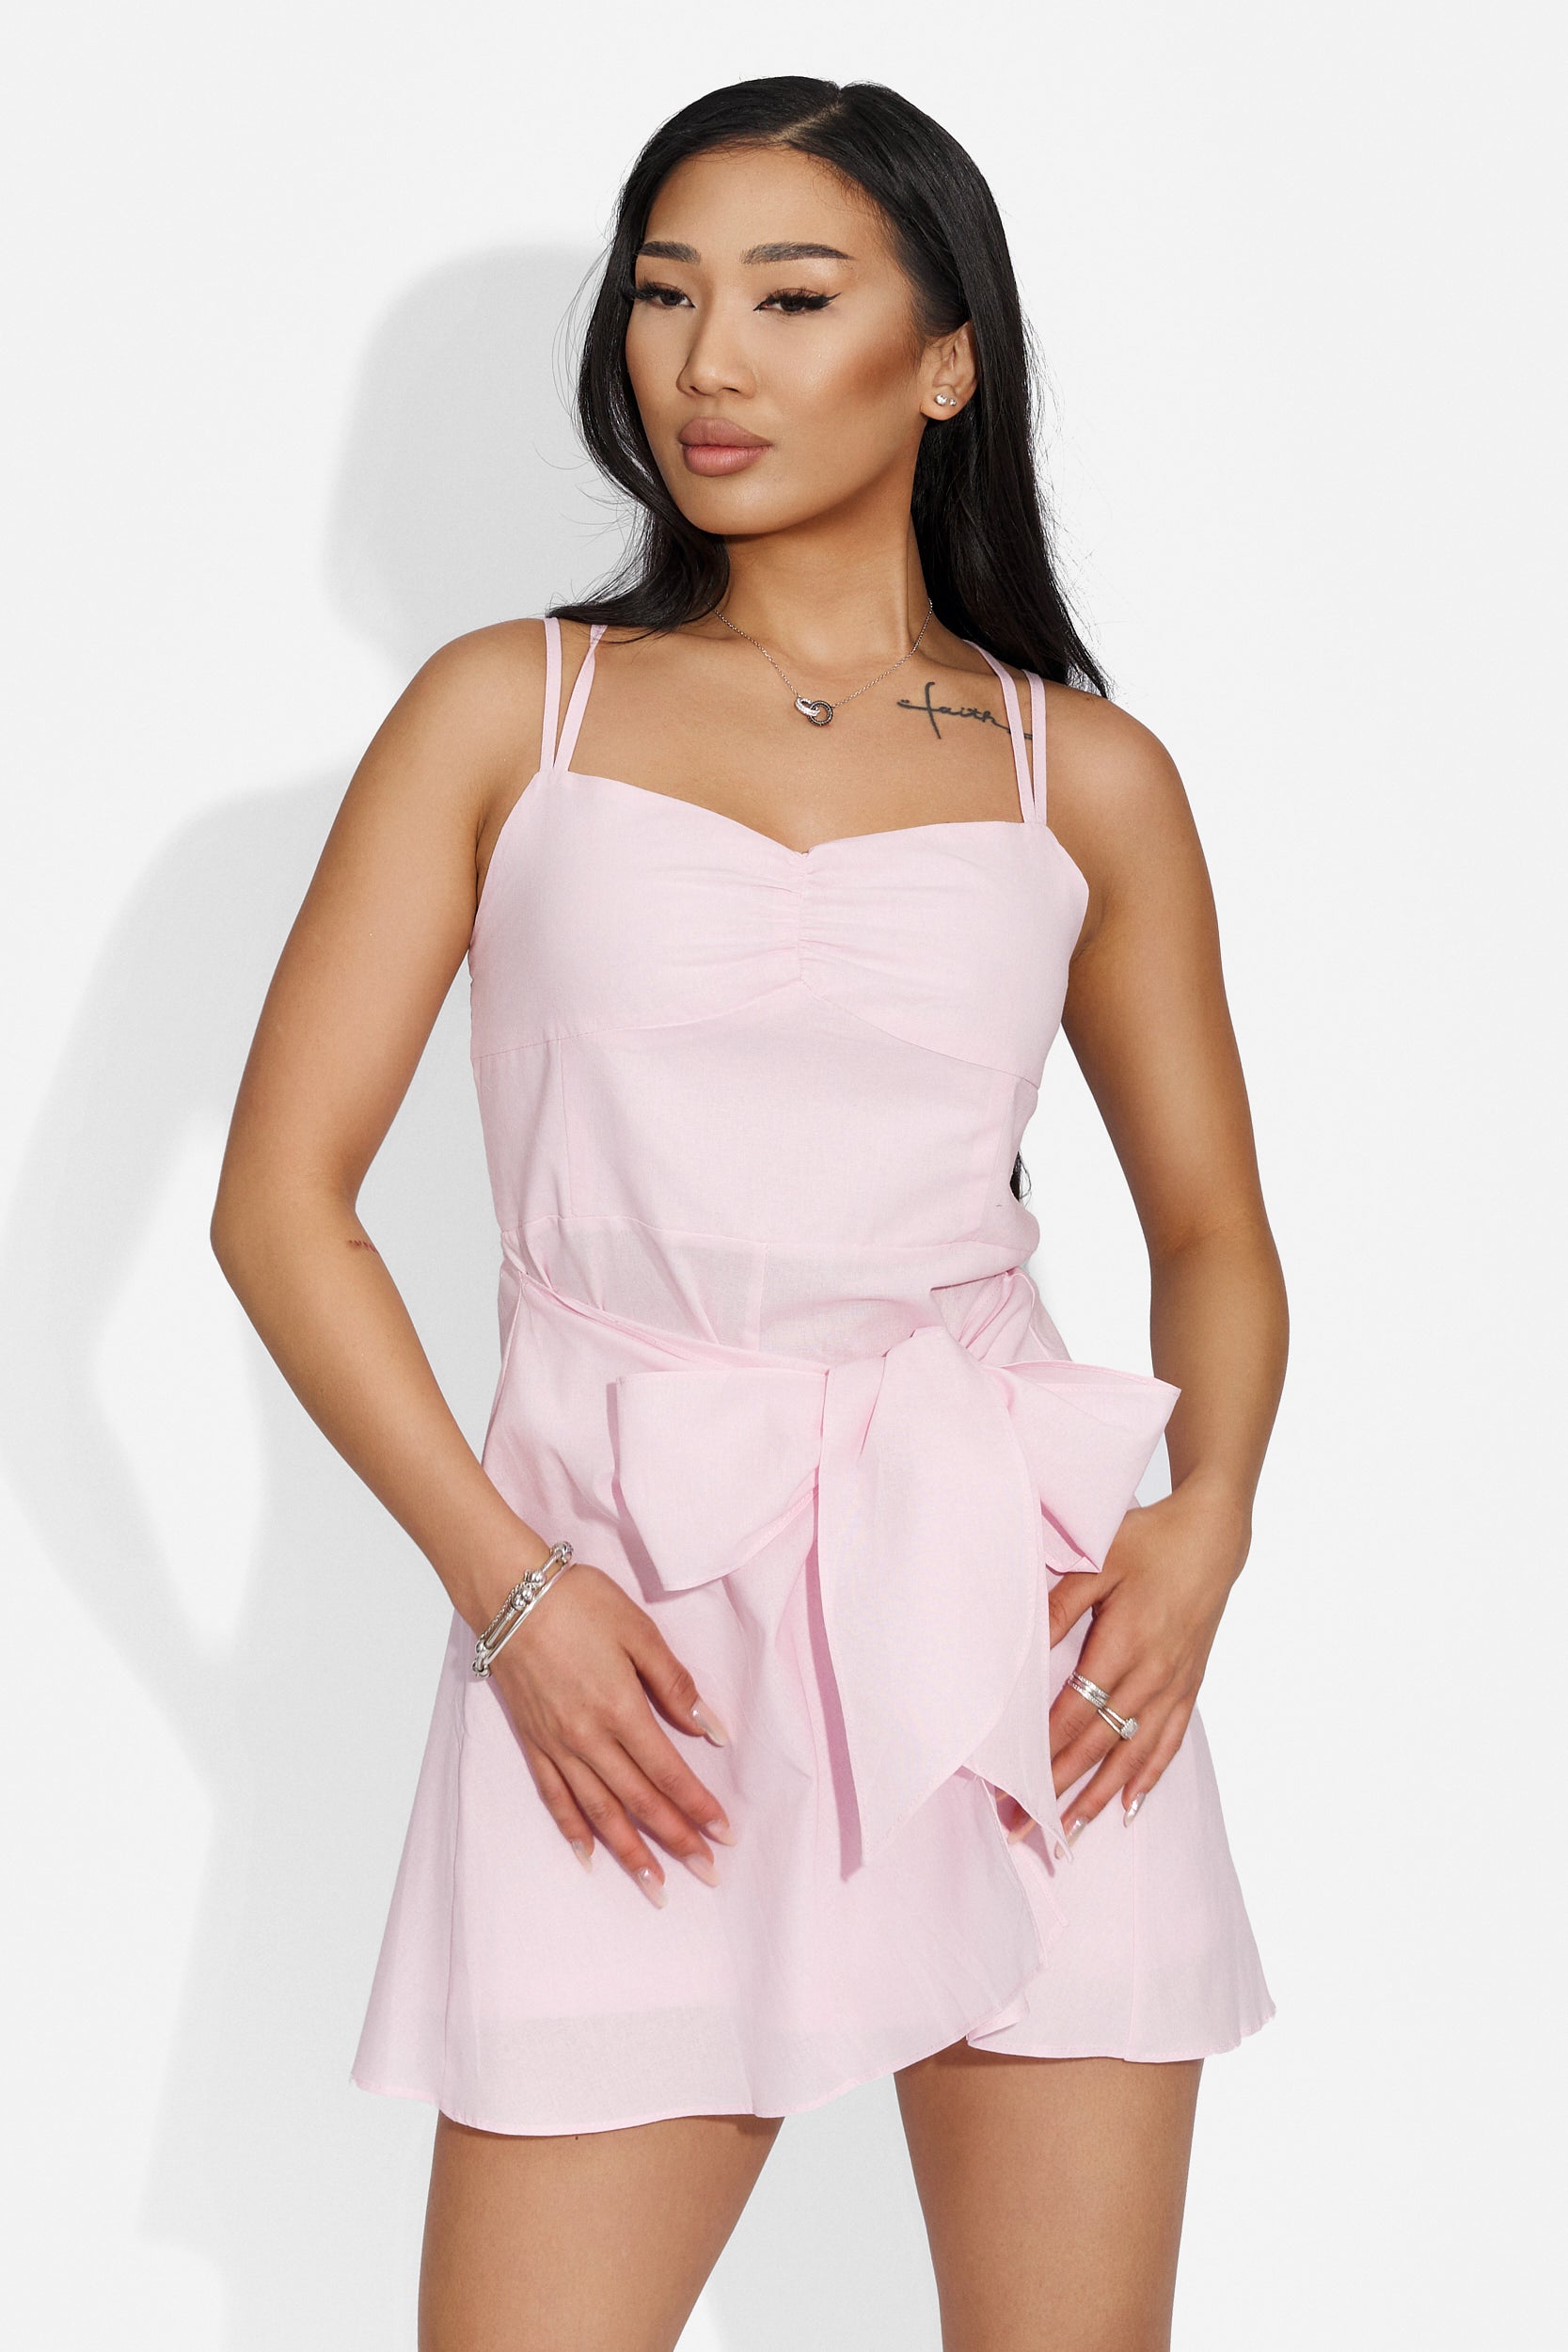 Camelea Bogas rövid rózsaszín női ruha